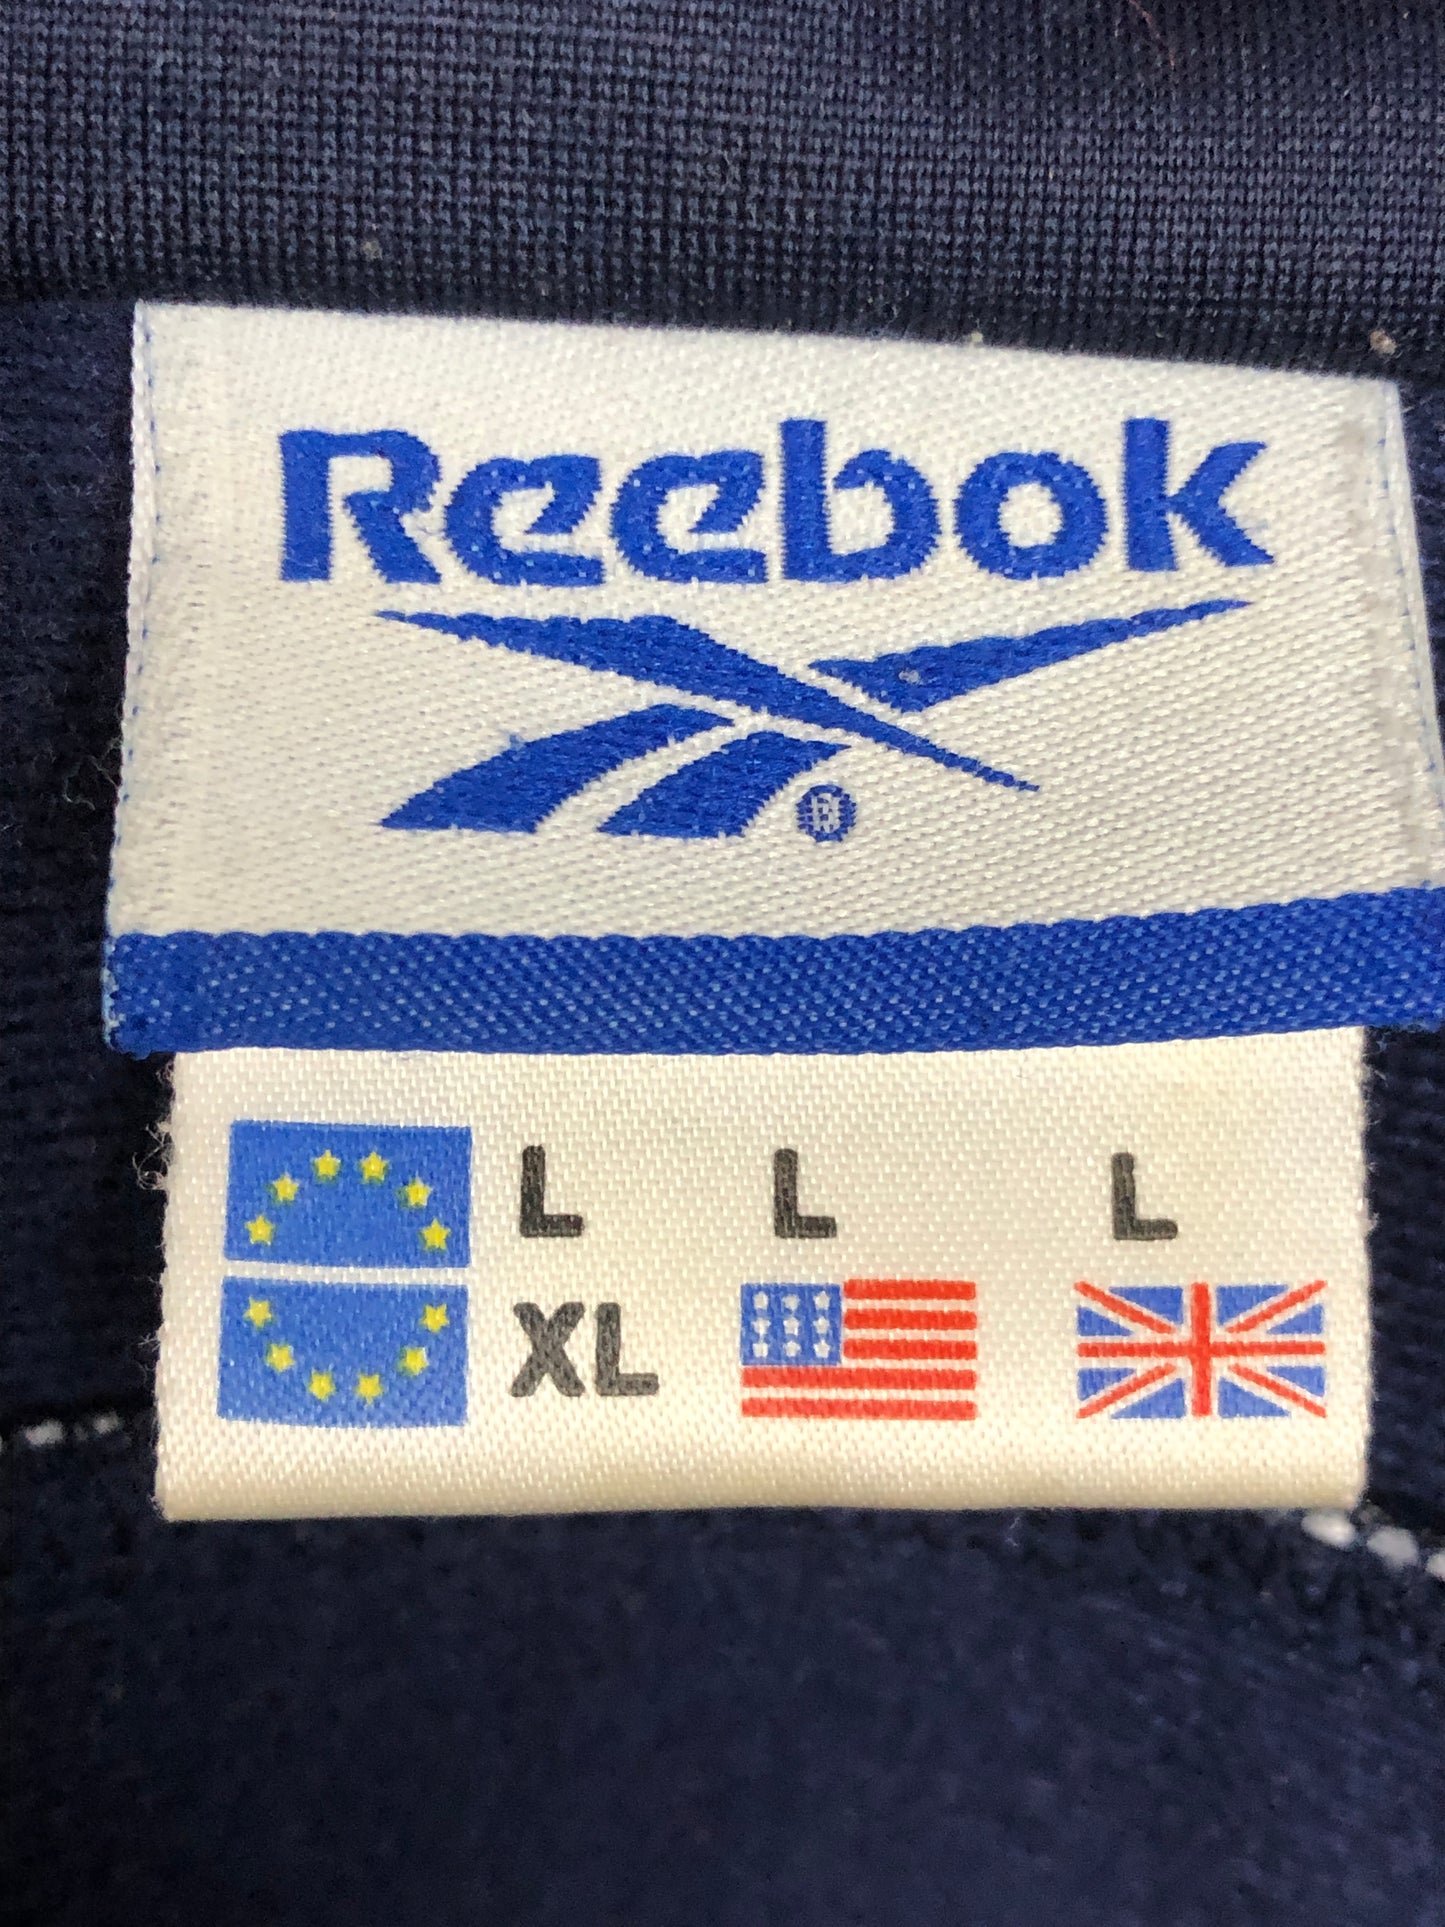 90s Reebok Vintage Men's Track Jacket - Large Navy Blue Polyester